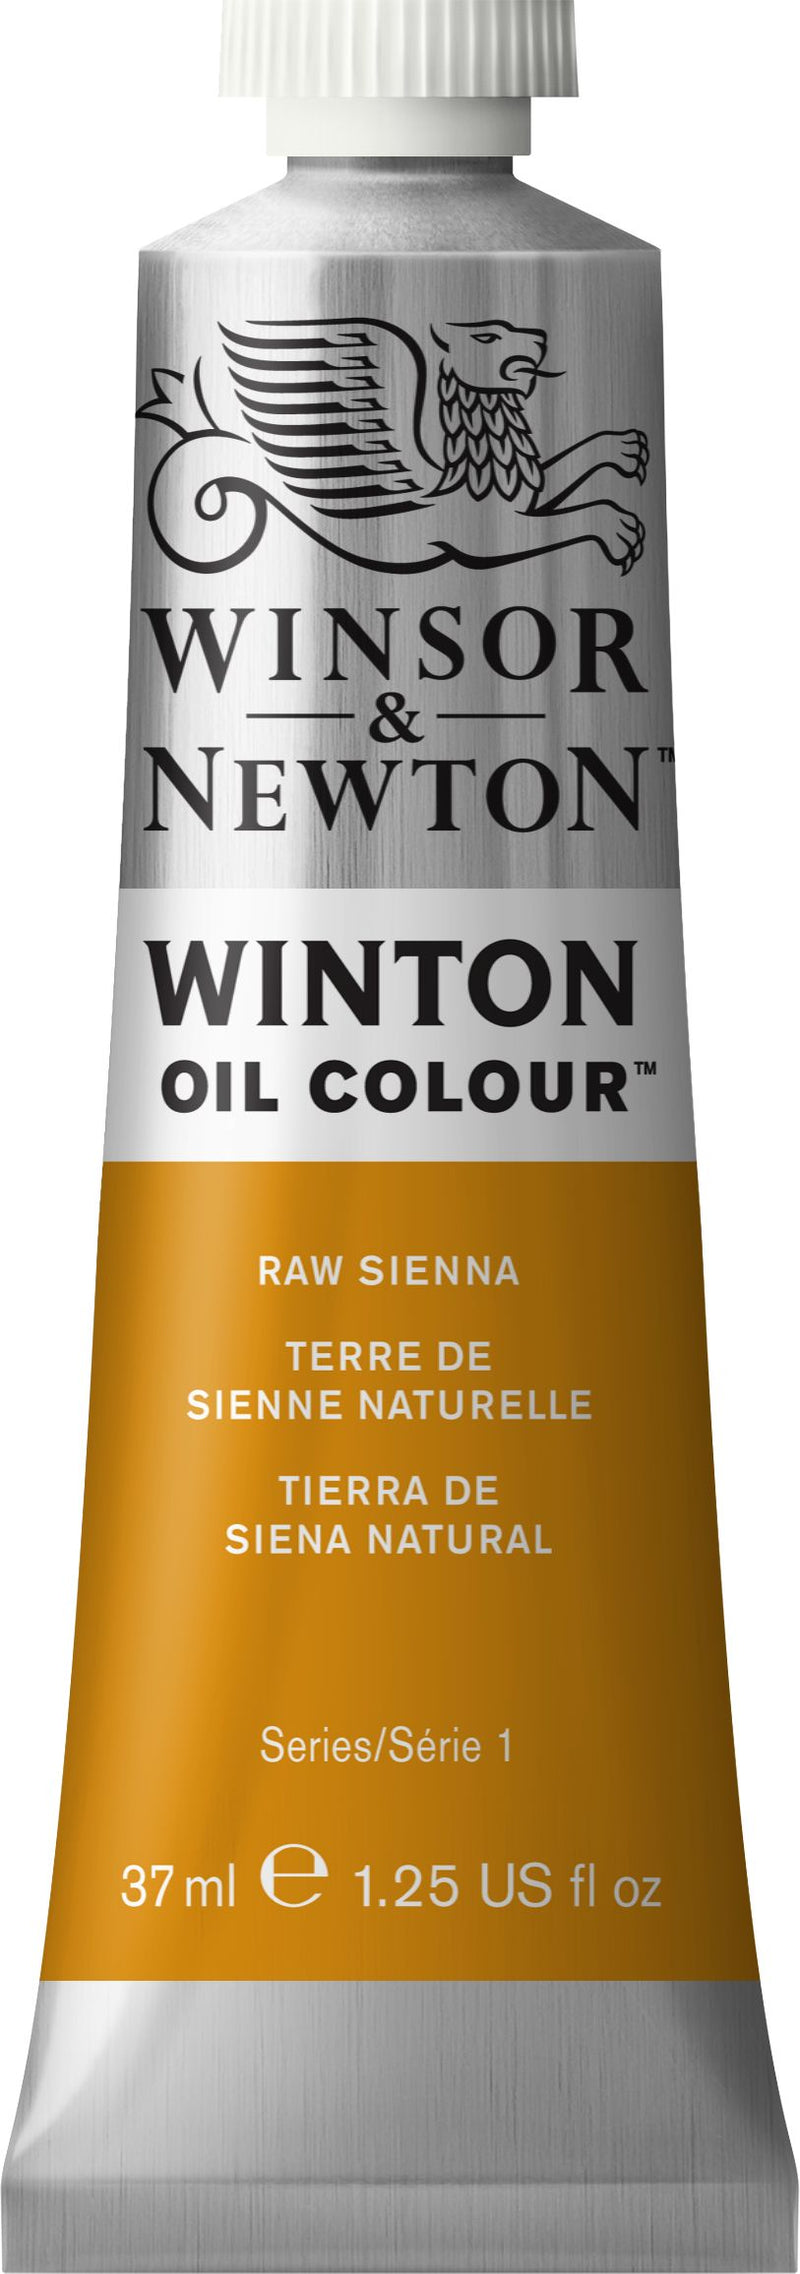 Winton Oil Colour Raw Sienna - 37ml tube